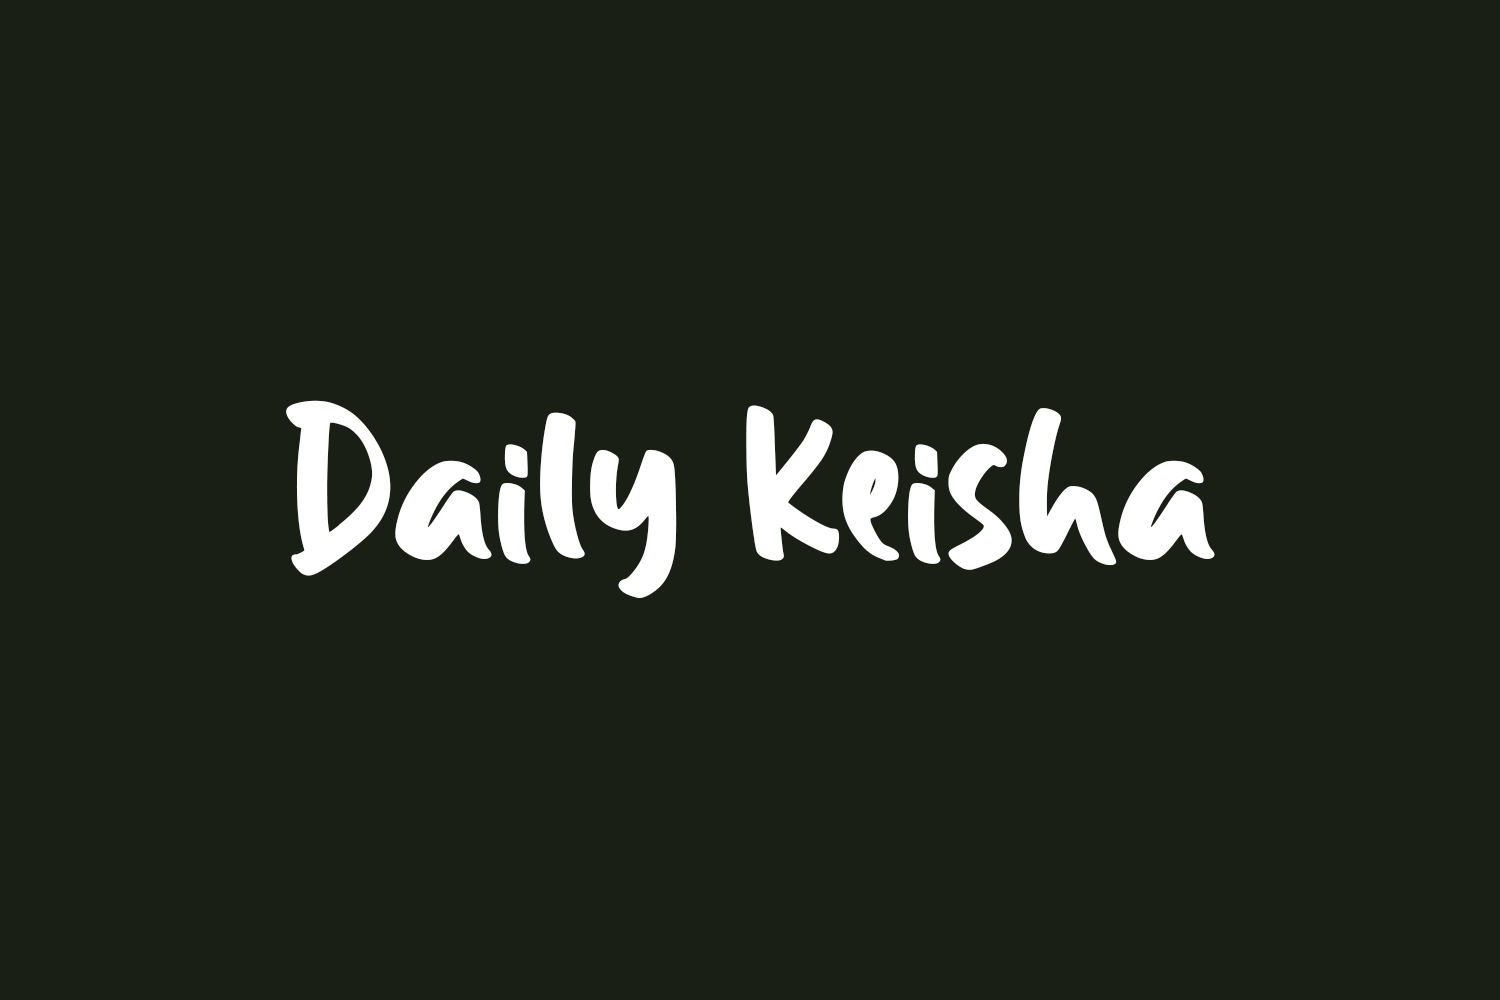 Daily Keisha Free Font